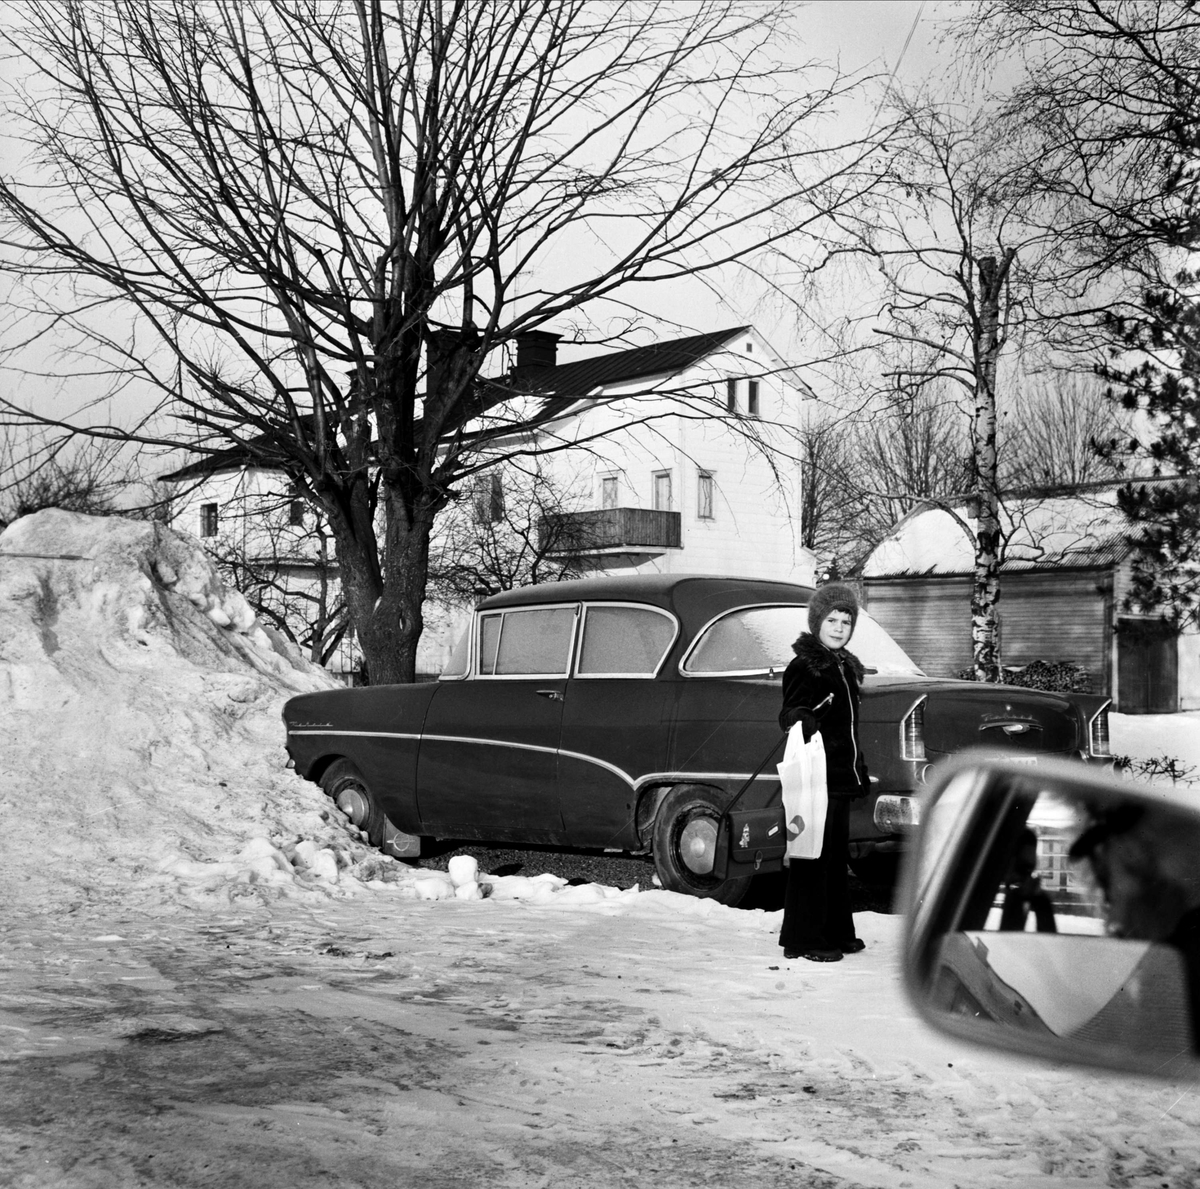 Långtidsparkering bekymrar Tierpsbor, Tierp, Uppland november 1973